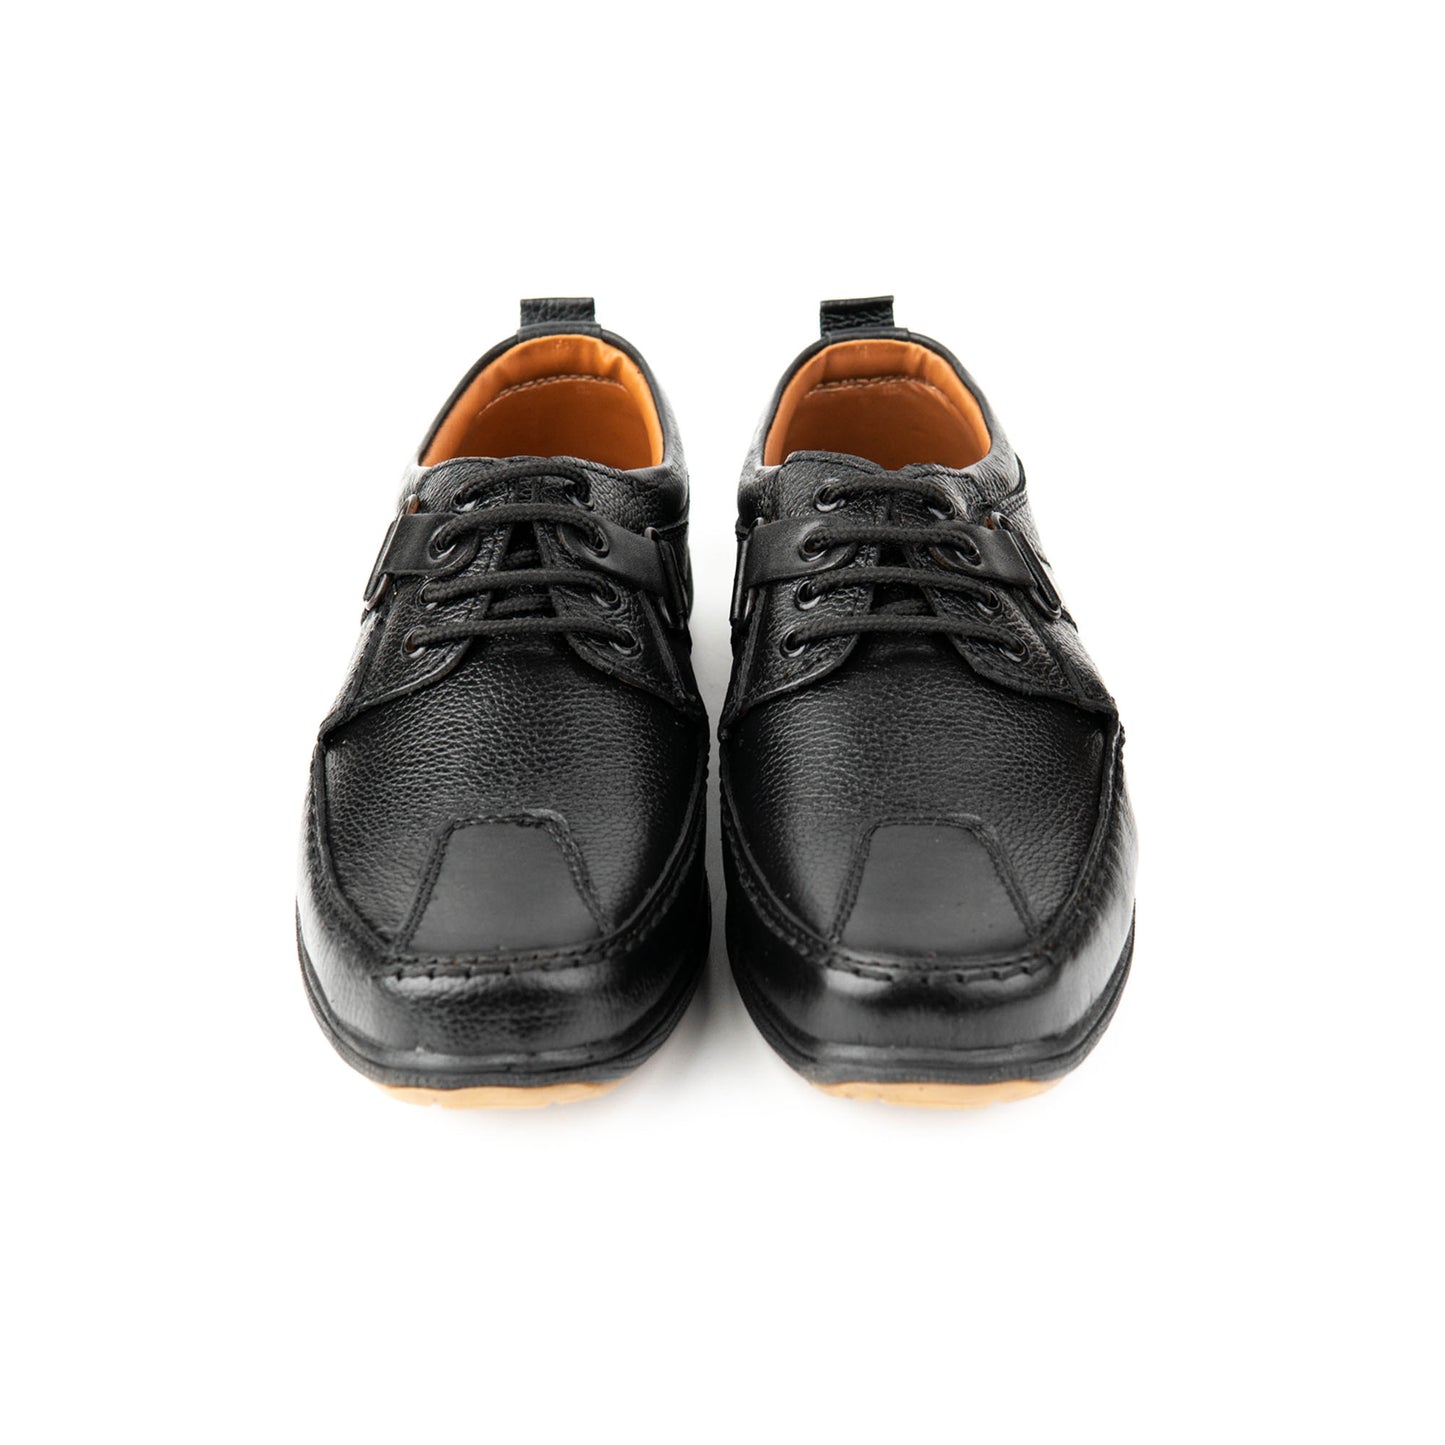 men shoes